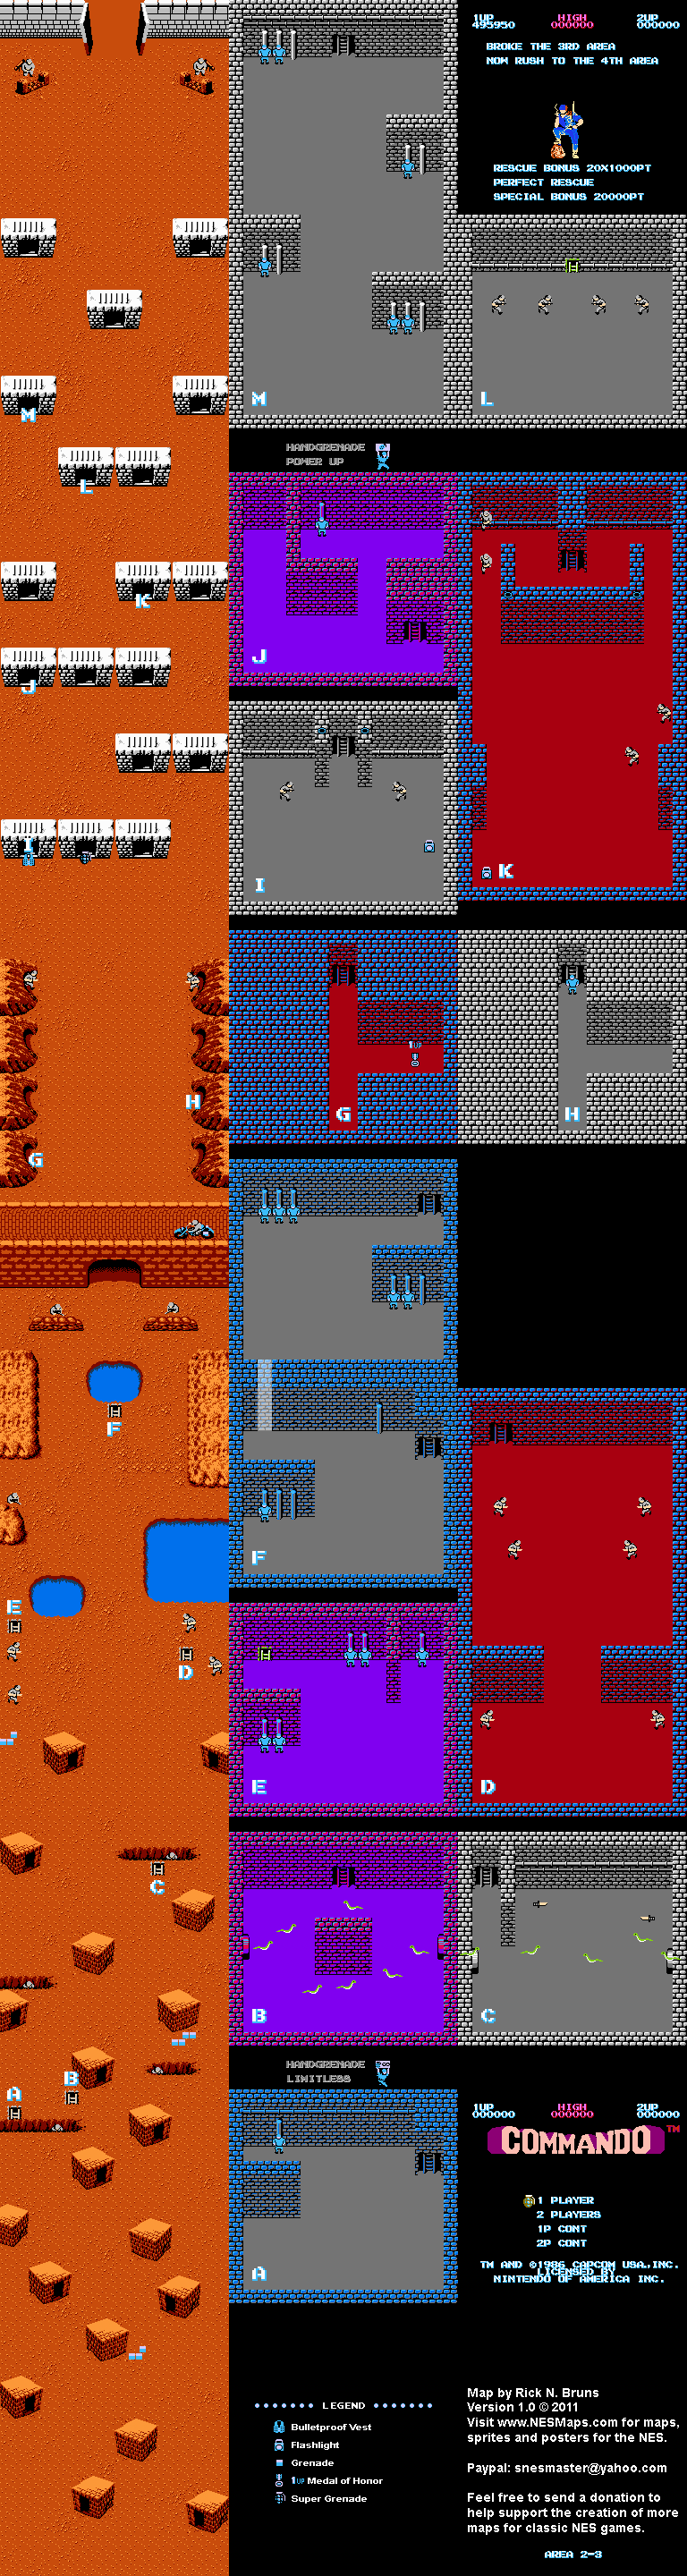 Commando - Area 2-3 - Nintendo NES Map